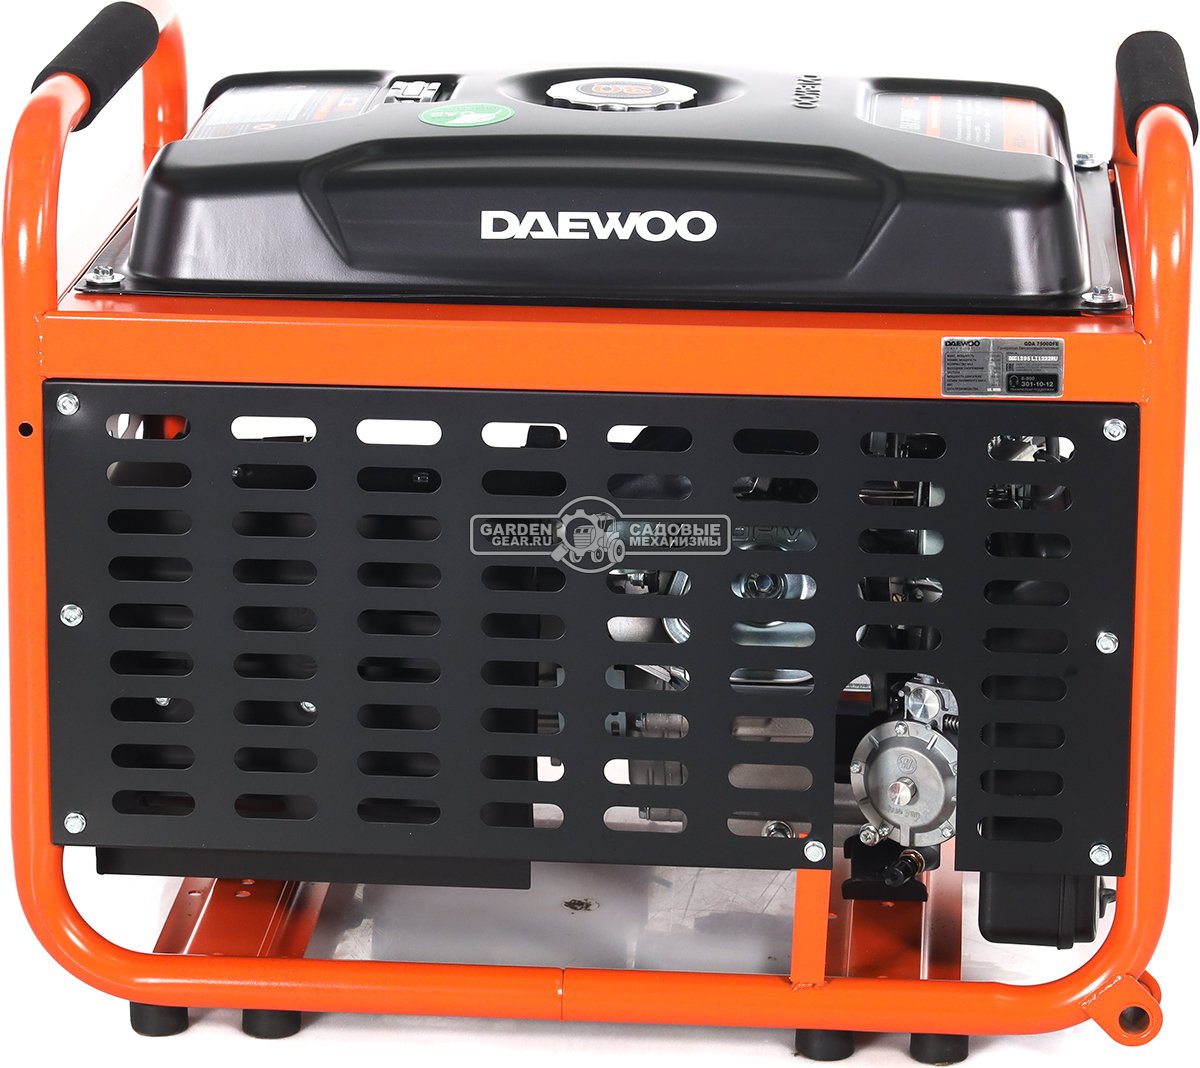 Двухтопливный генератор Daewoo GDA 7500 DFE сжиженный газ / бензин (PRC, Daewoo, 425 см3, 6,0/6,5 кВт, электростартер, разъем ATS, 30 л., 84,8 кг.)